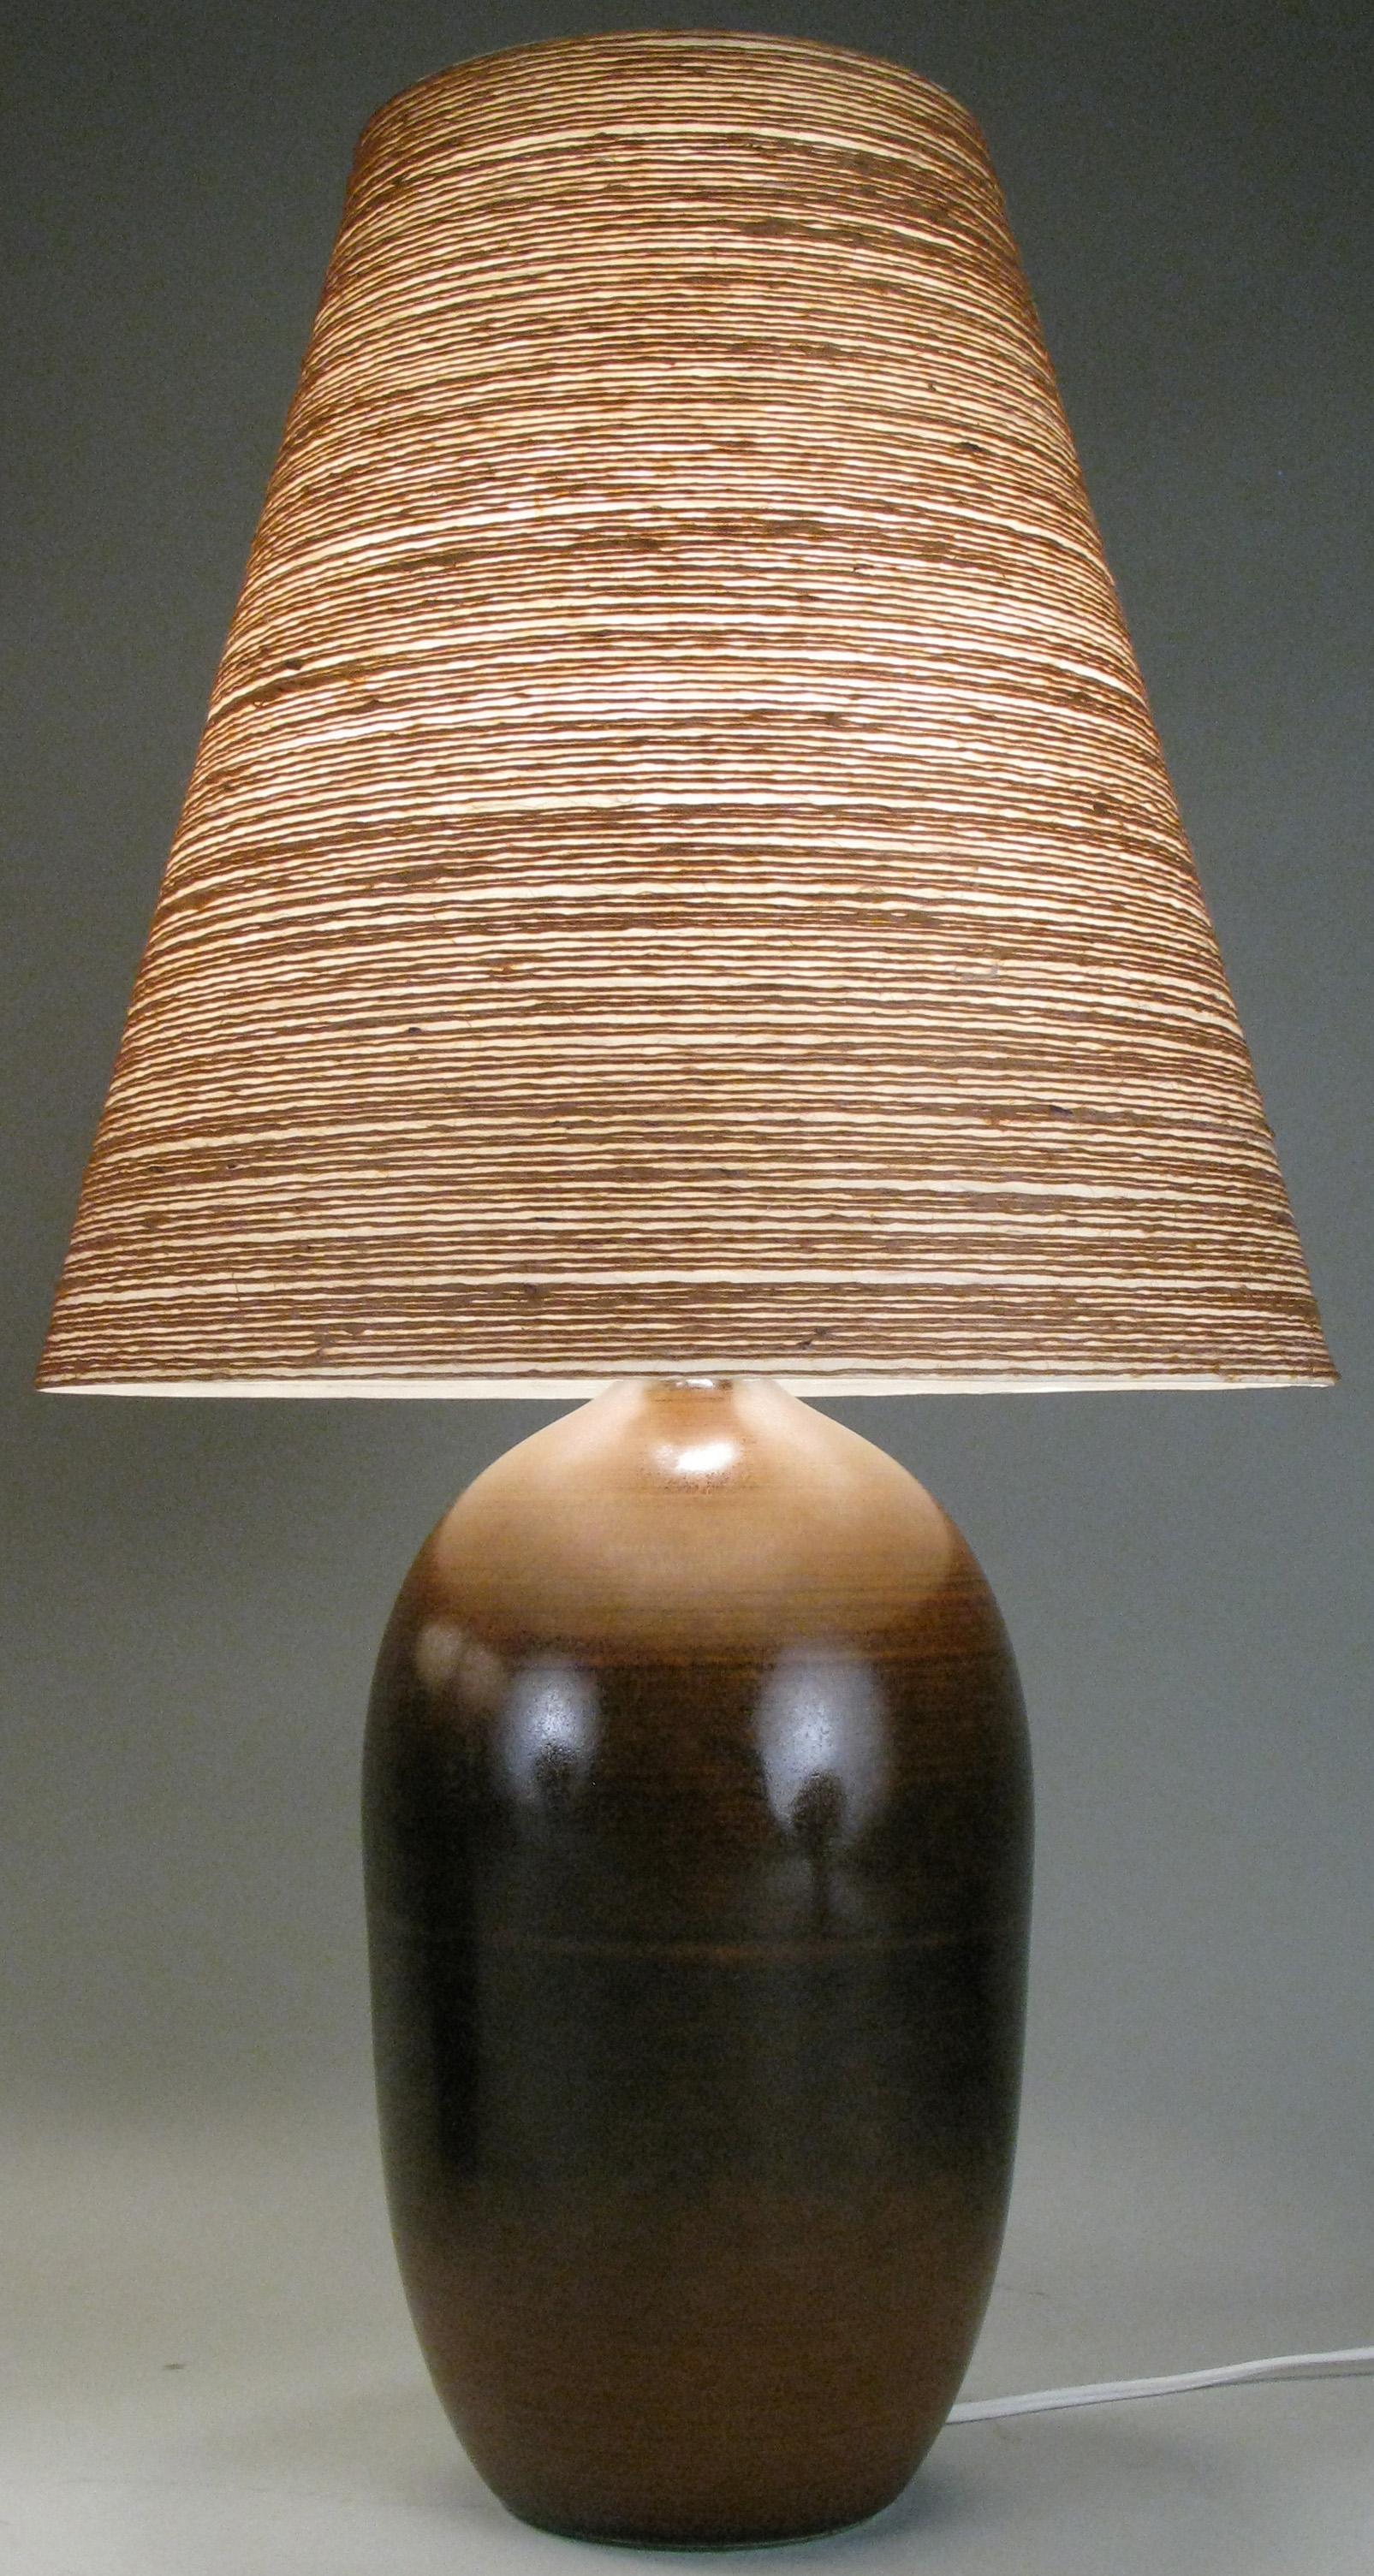 bostlund lamp